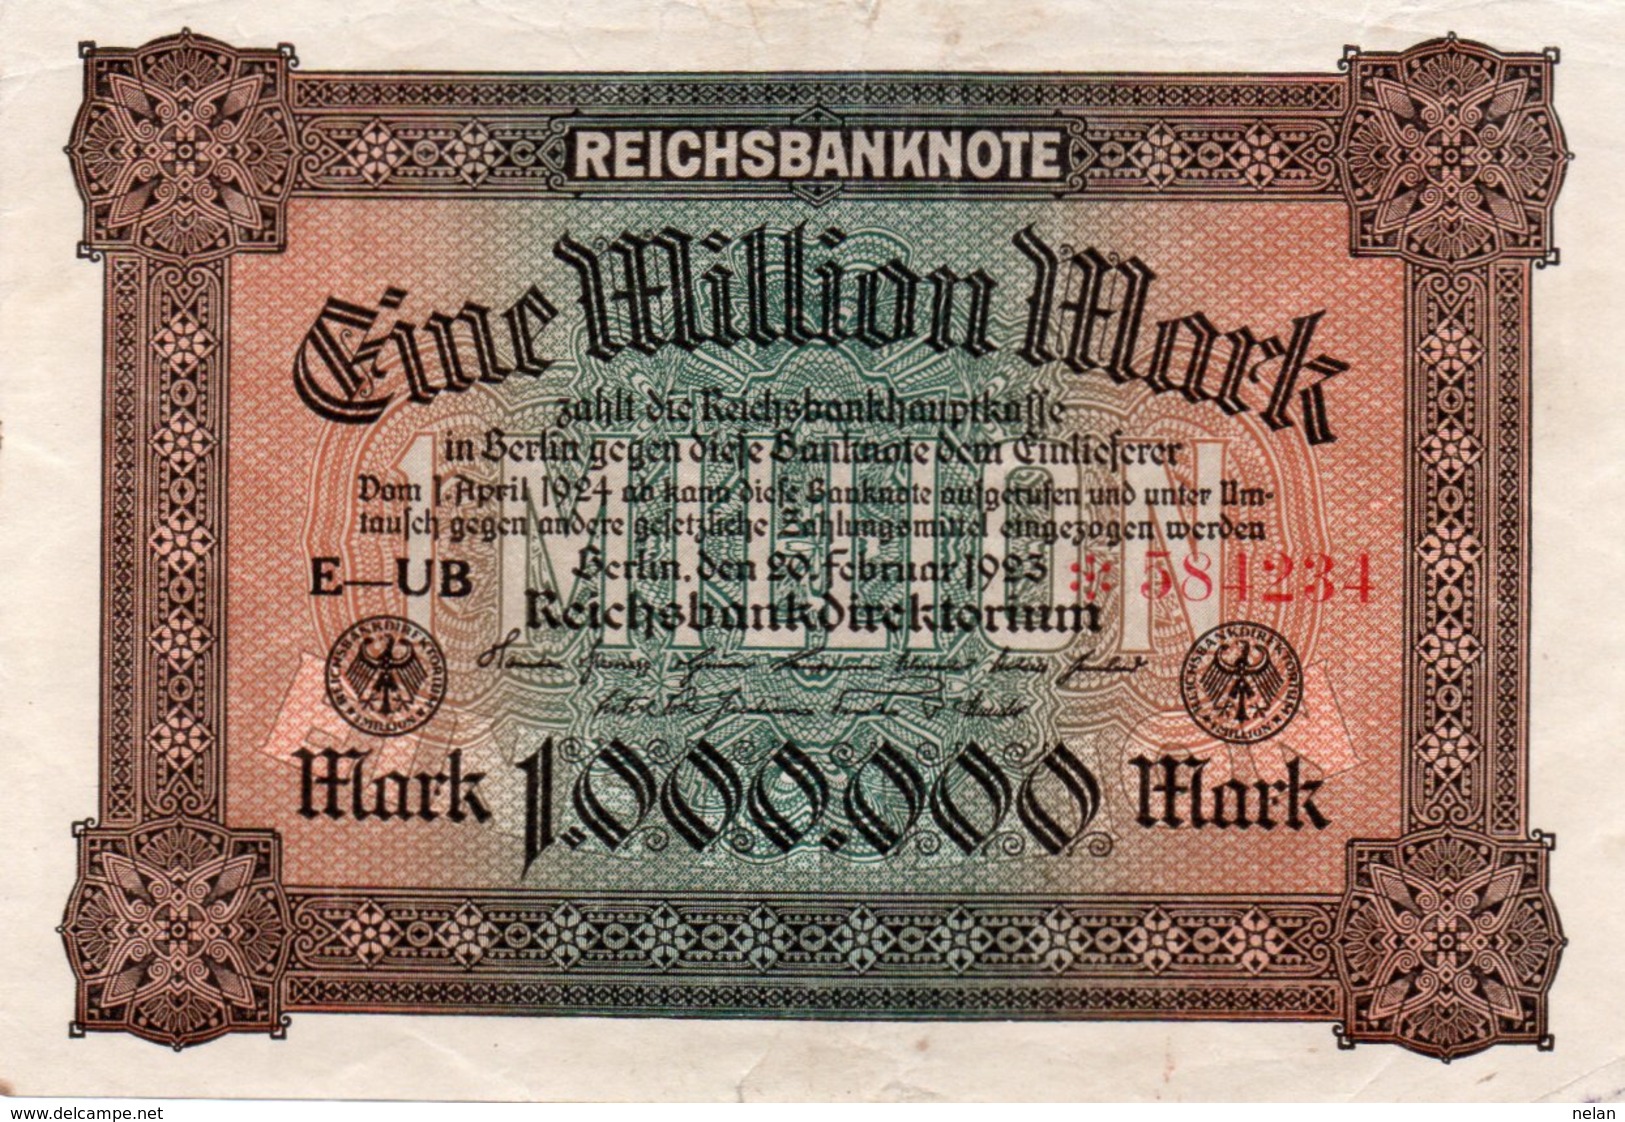 GERMANIA-REICHSBANKNOTE-1 MILL MARK 1923-  P-86a    XF++ UNIFACE  CON ASTERISC RARISSIMA - 1 Mio. Mark